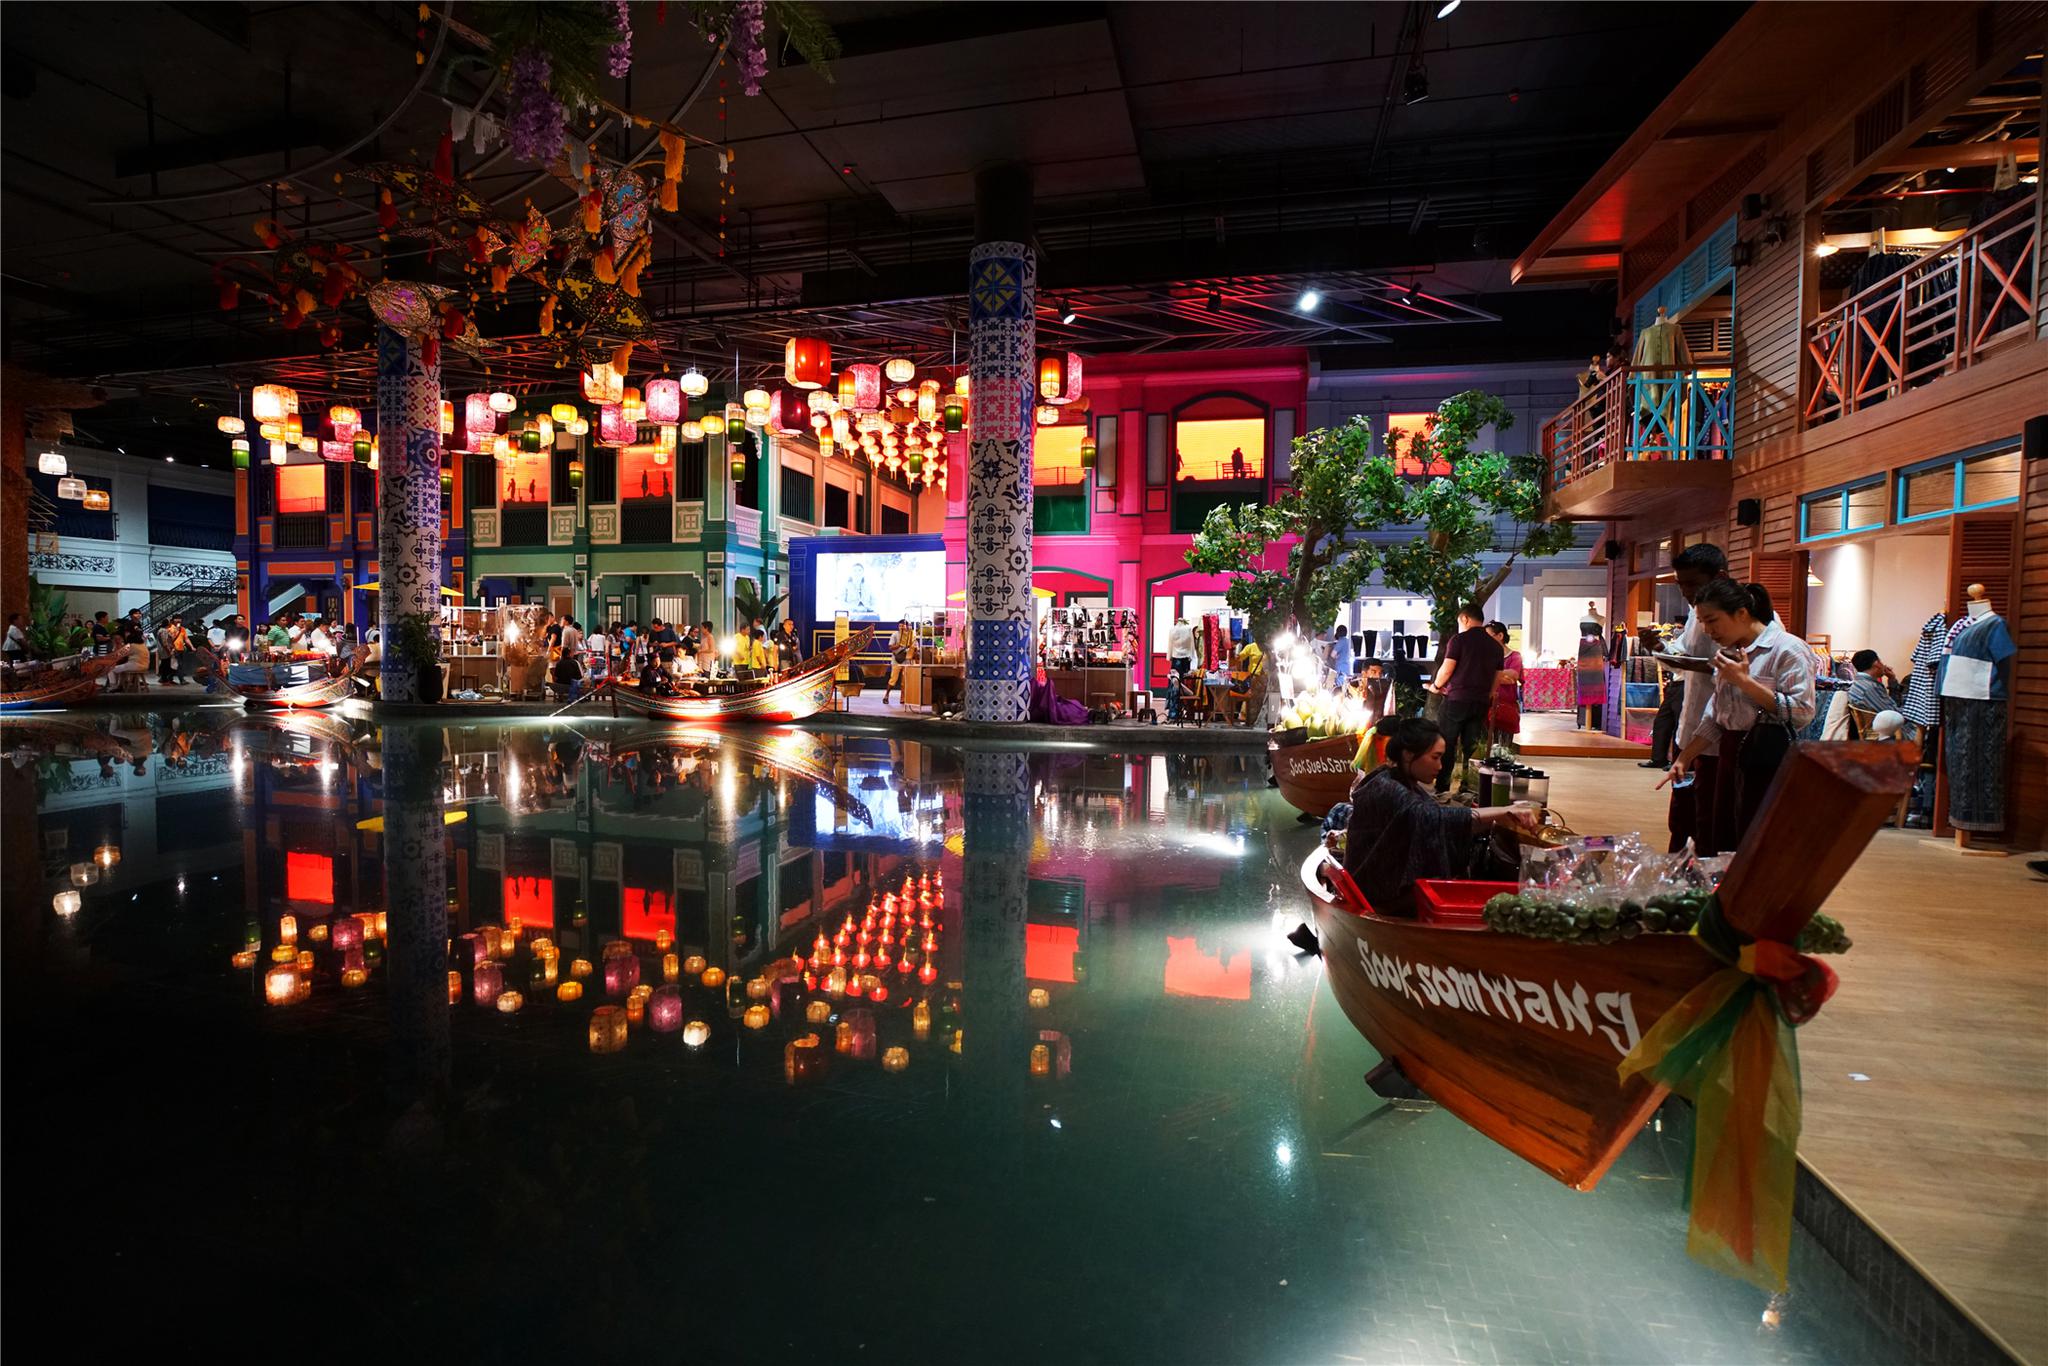 曼谷商场里居然隐藏着一个水上市场,这里汇聚了泰国最特色的小吃